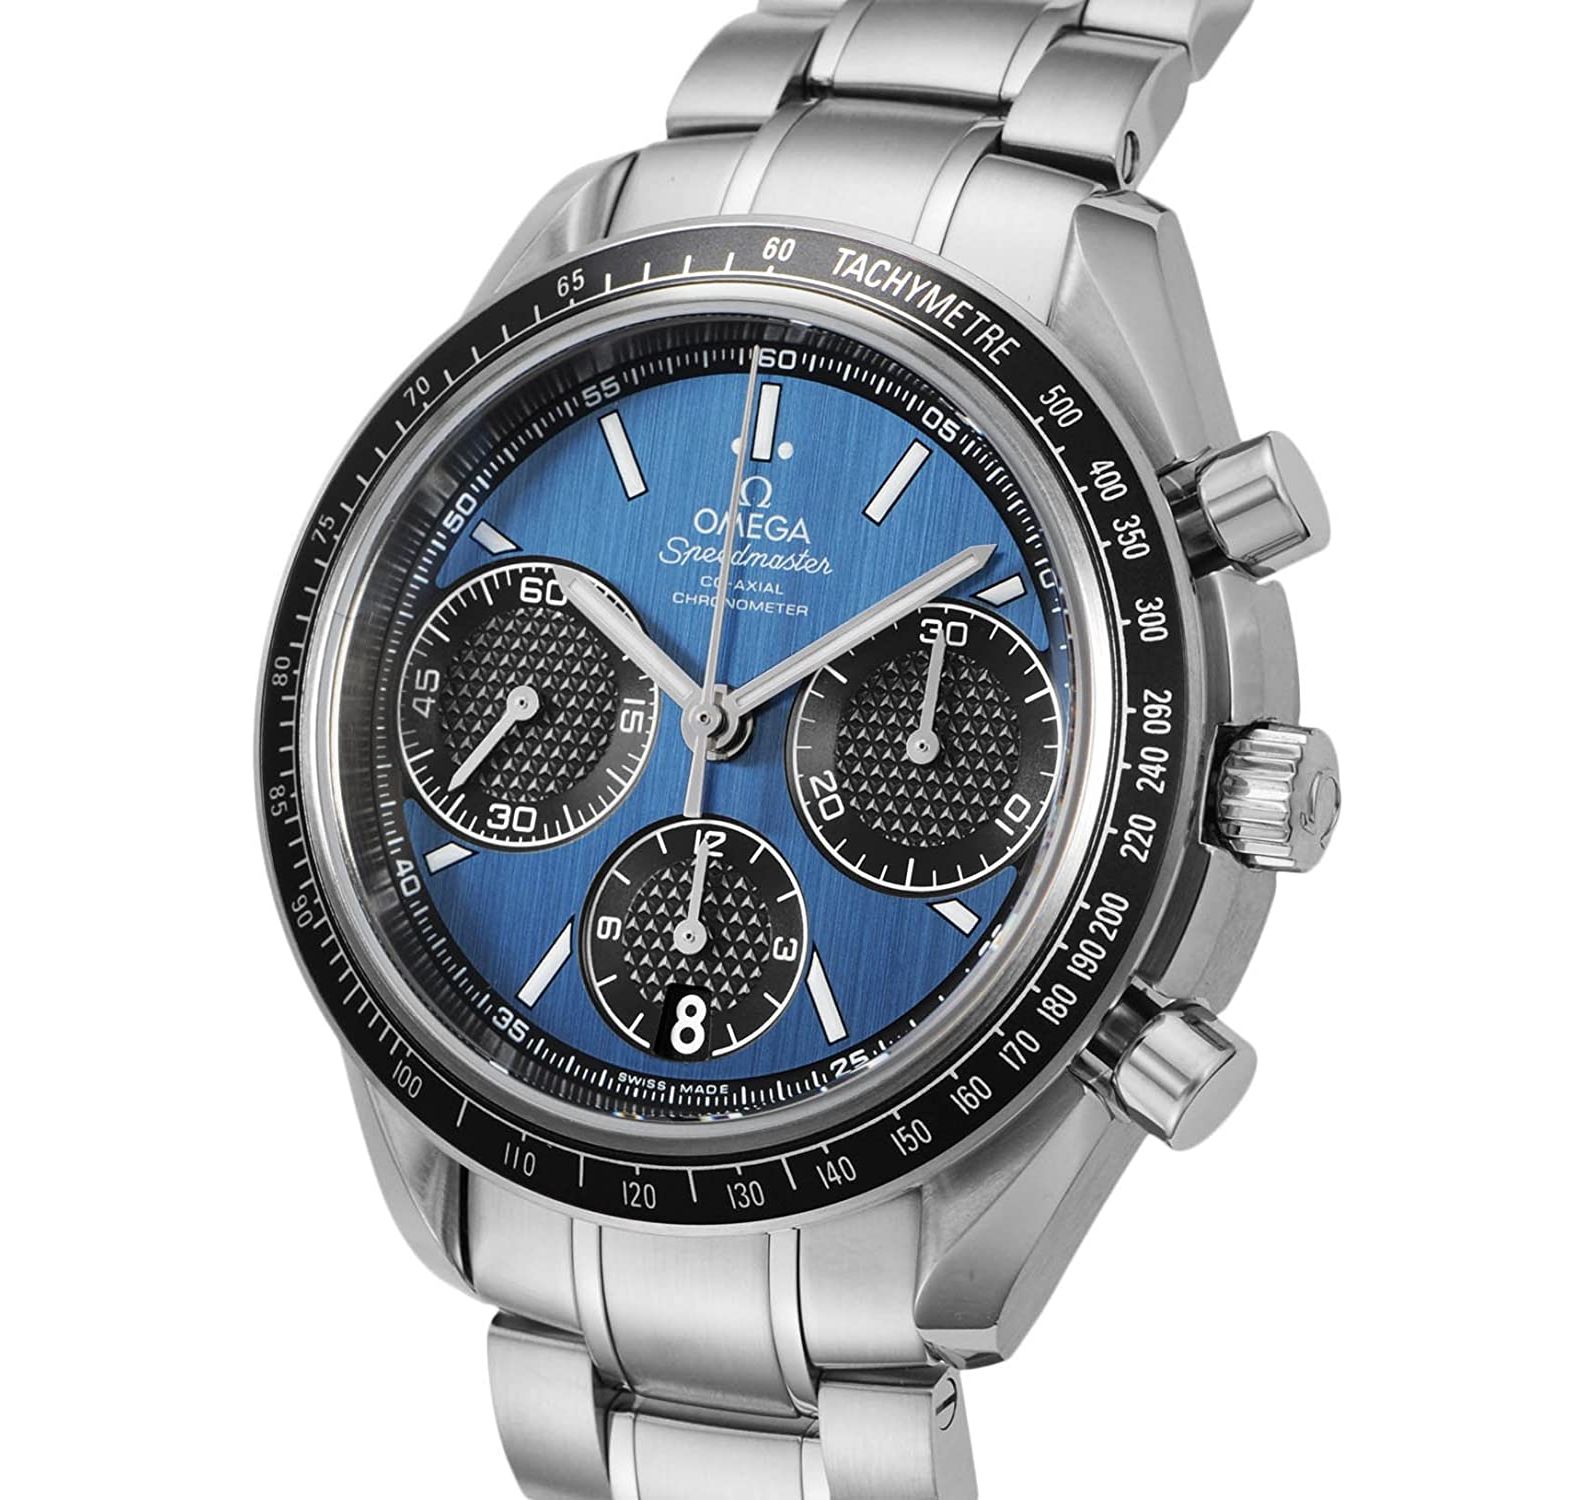 「OMEGA（オメガ）の腕時計」AmazonランキングTOP10！【スピードマスター・シーマスターなど】（4/21 13:46） | ねとらぼ調査隊